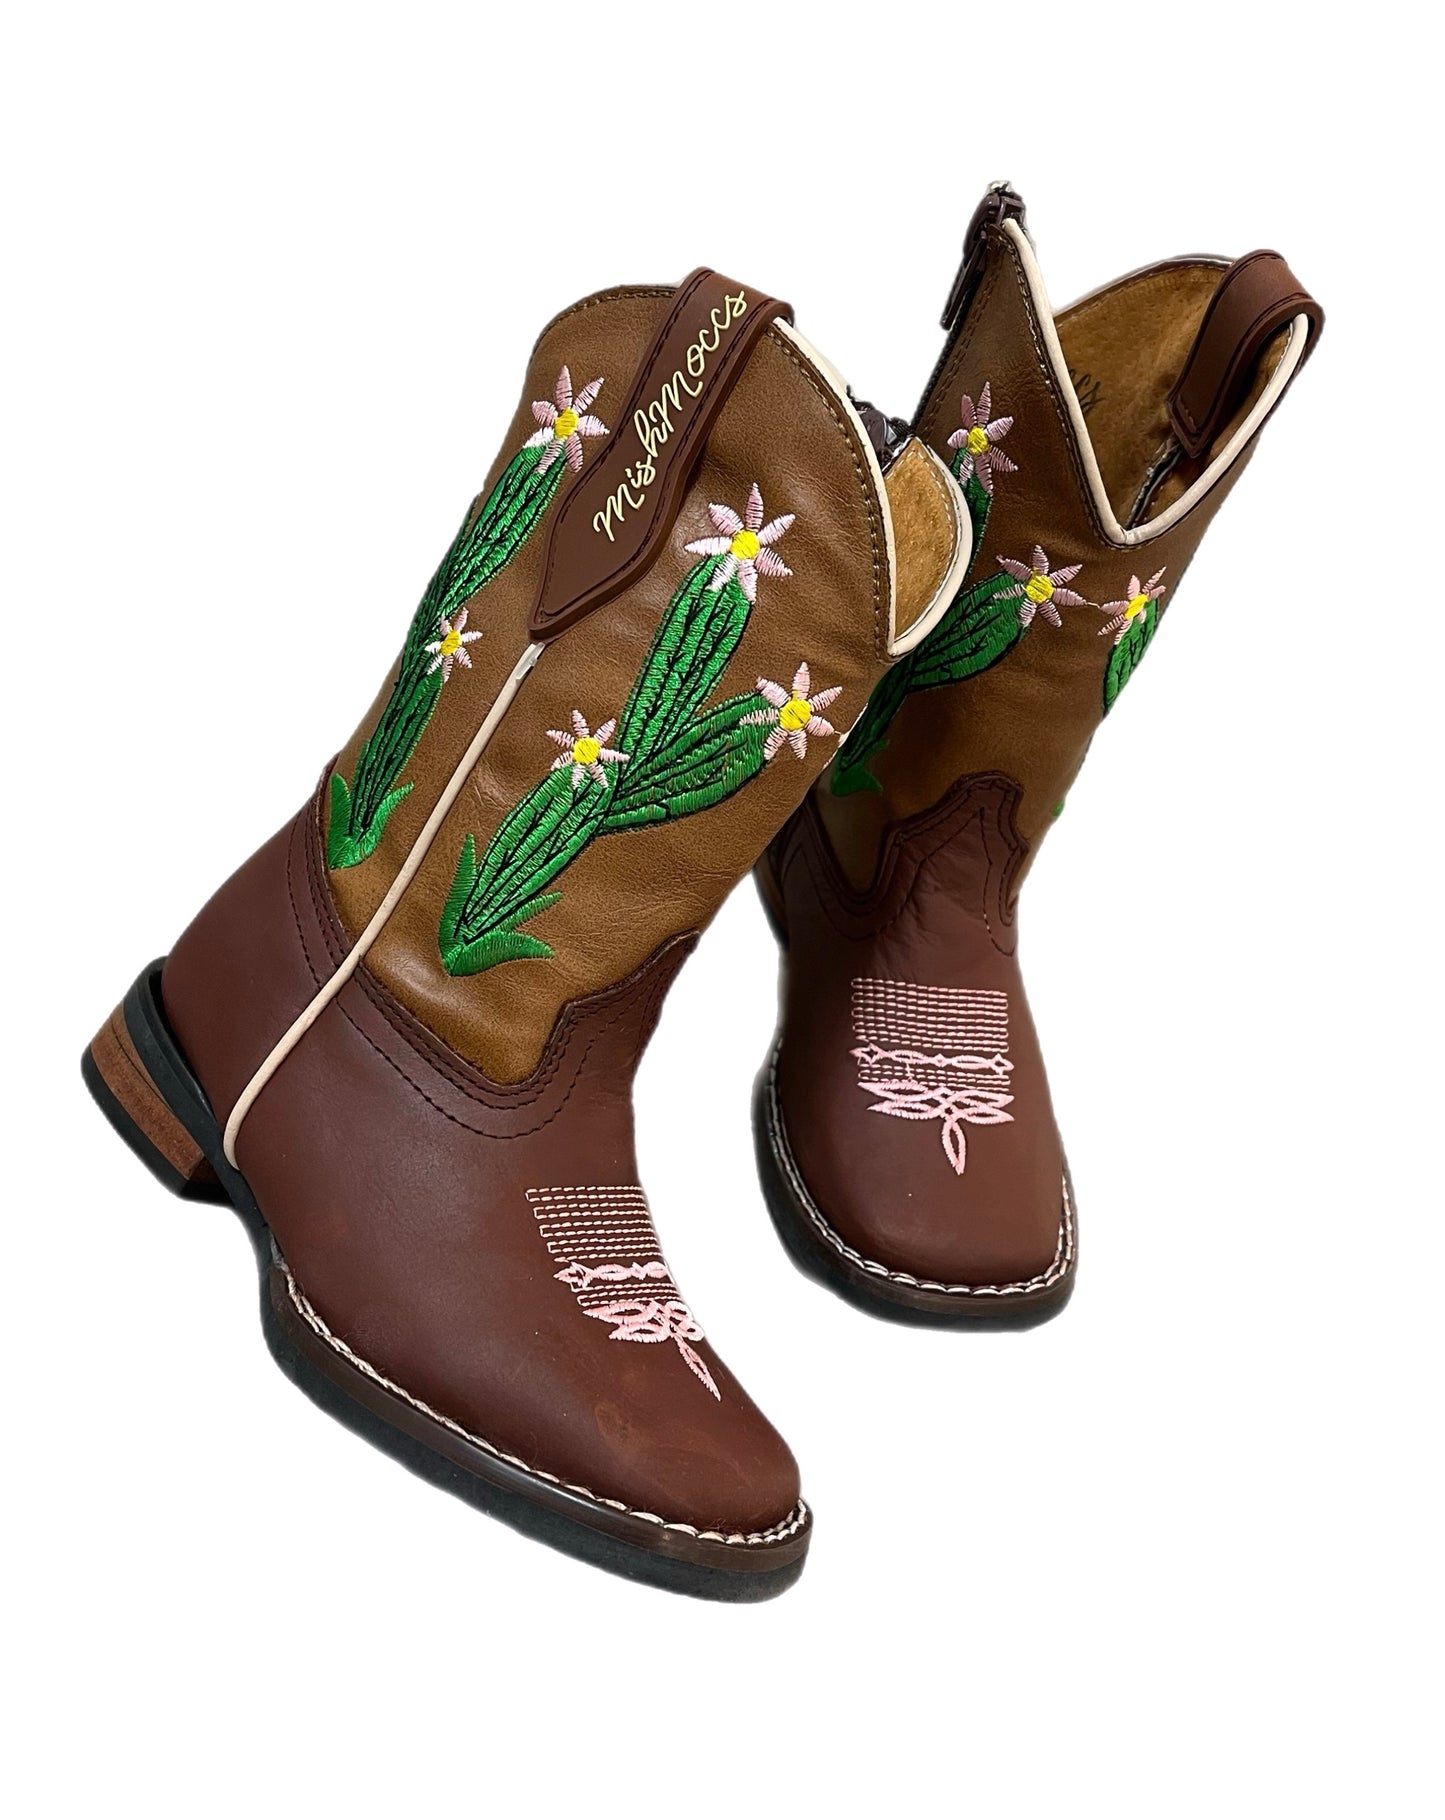 Cactus Square Toe Boots